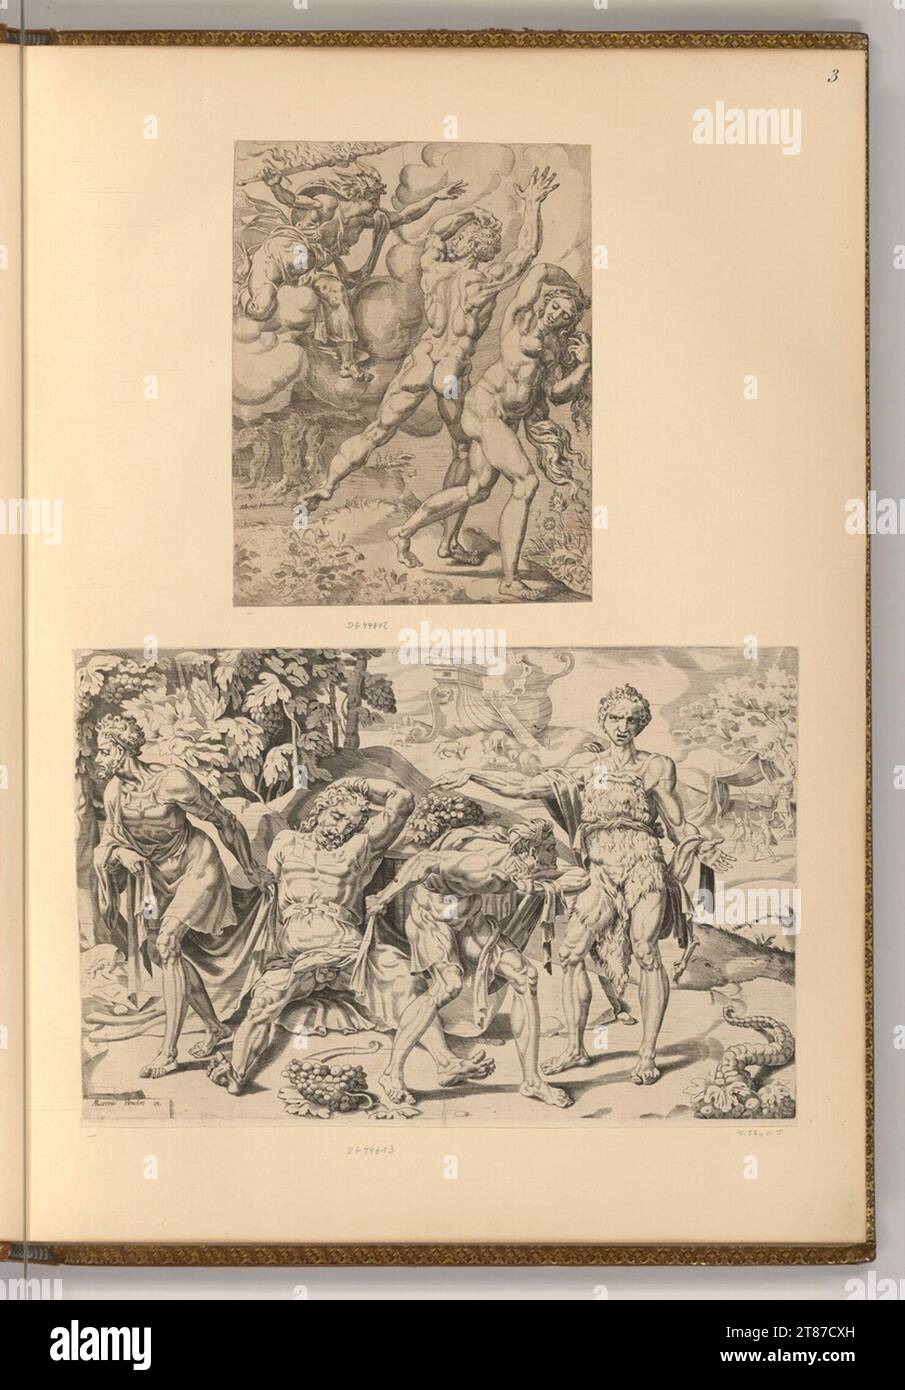 Dirck Volkertszoon Coornhert (graveur) expulsion du paradis ; la moquerie de Noé. Gravure ; gravure sur cuivre vers 1550 Banque D'Images